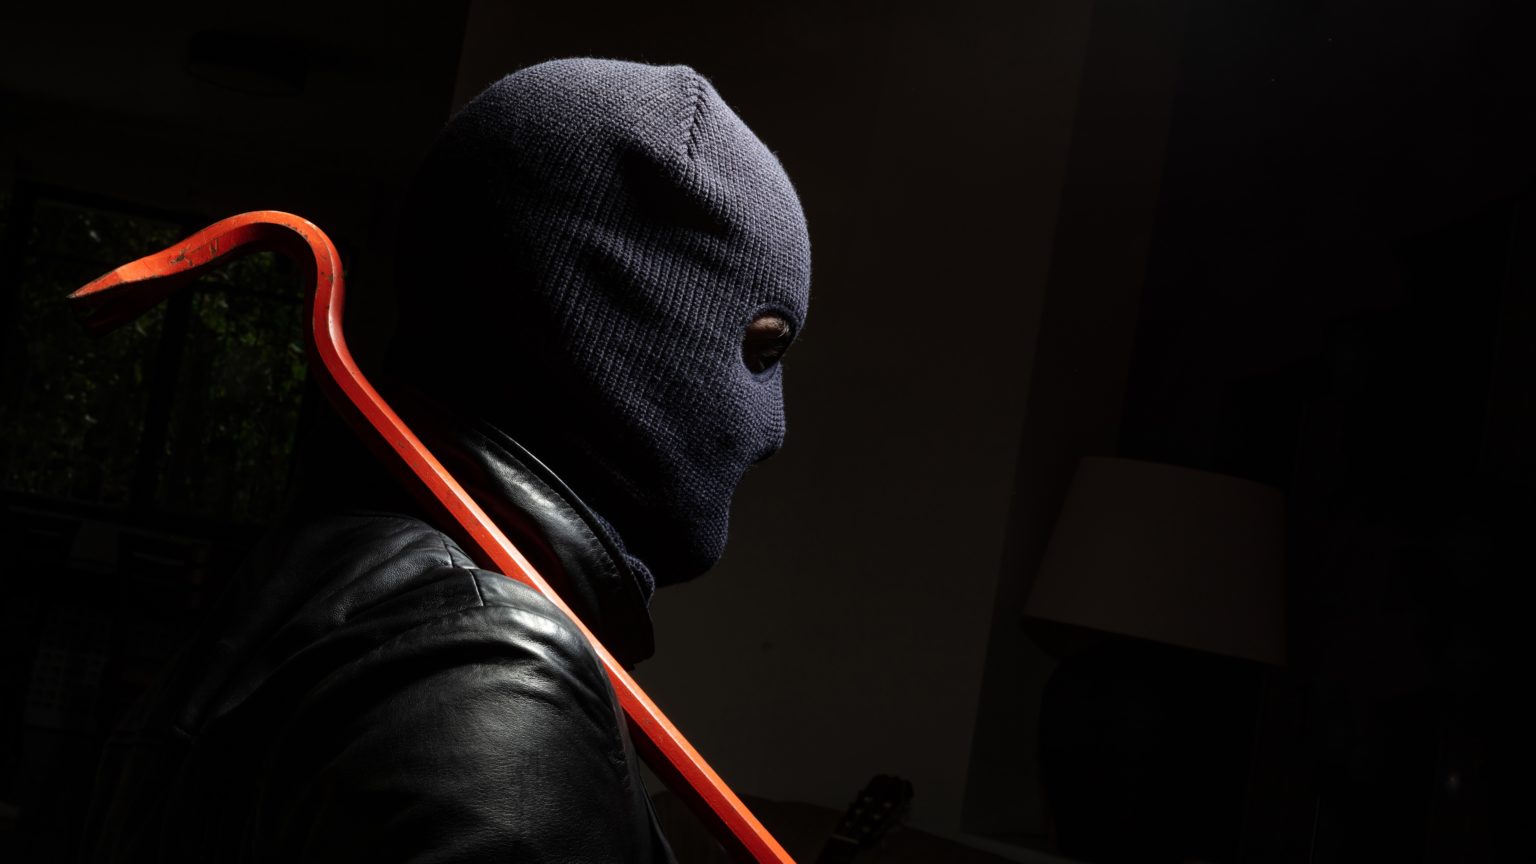 Razbojništvo u Solinu: Maskirani razbojnik uz prijetnju nožem opljačkao prodavaonicu